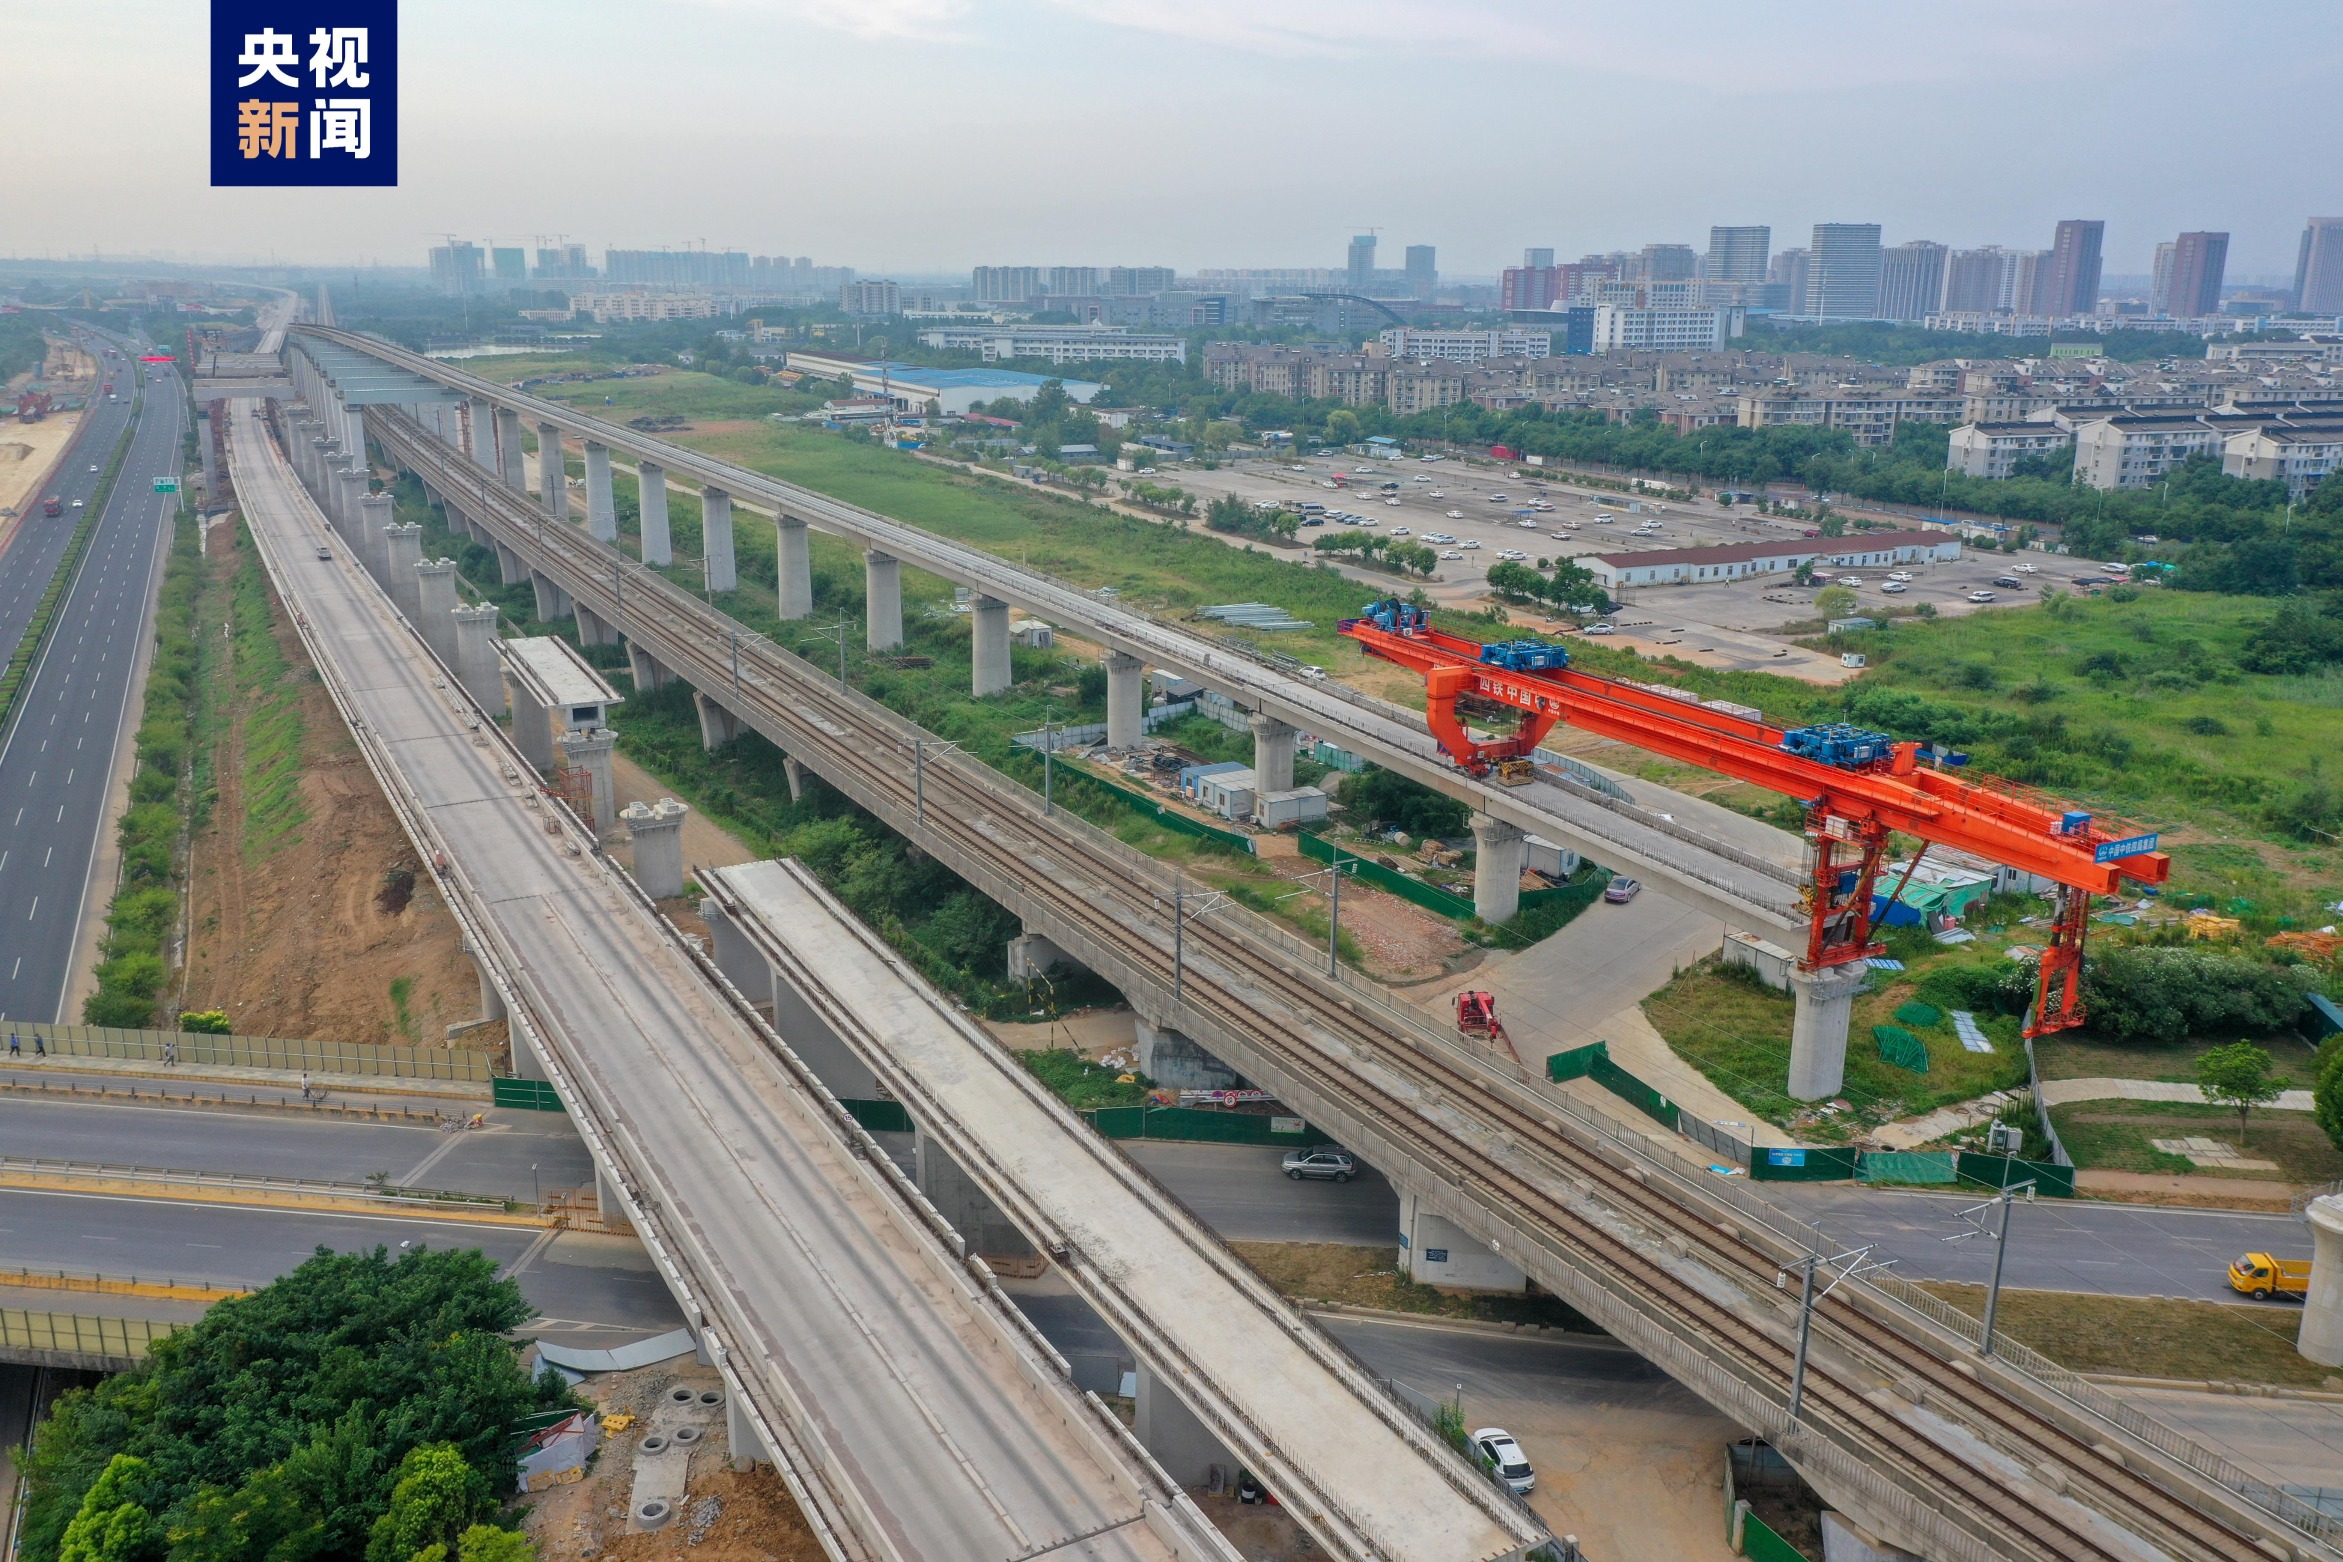 新建南沿江城际铁路是长江经济带综合立体交通走廊规划中的重要骨干线路